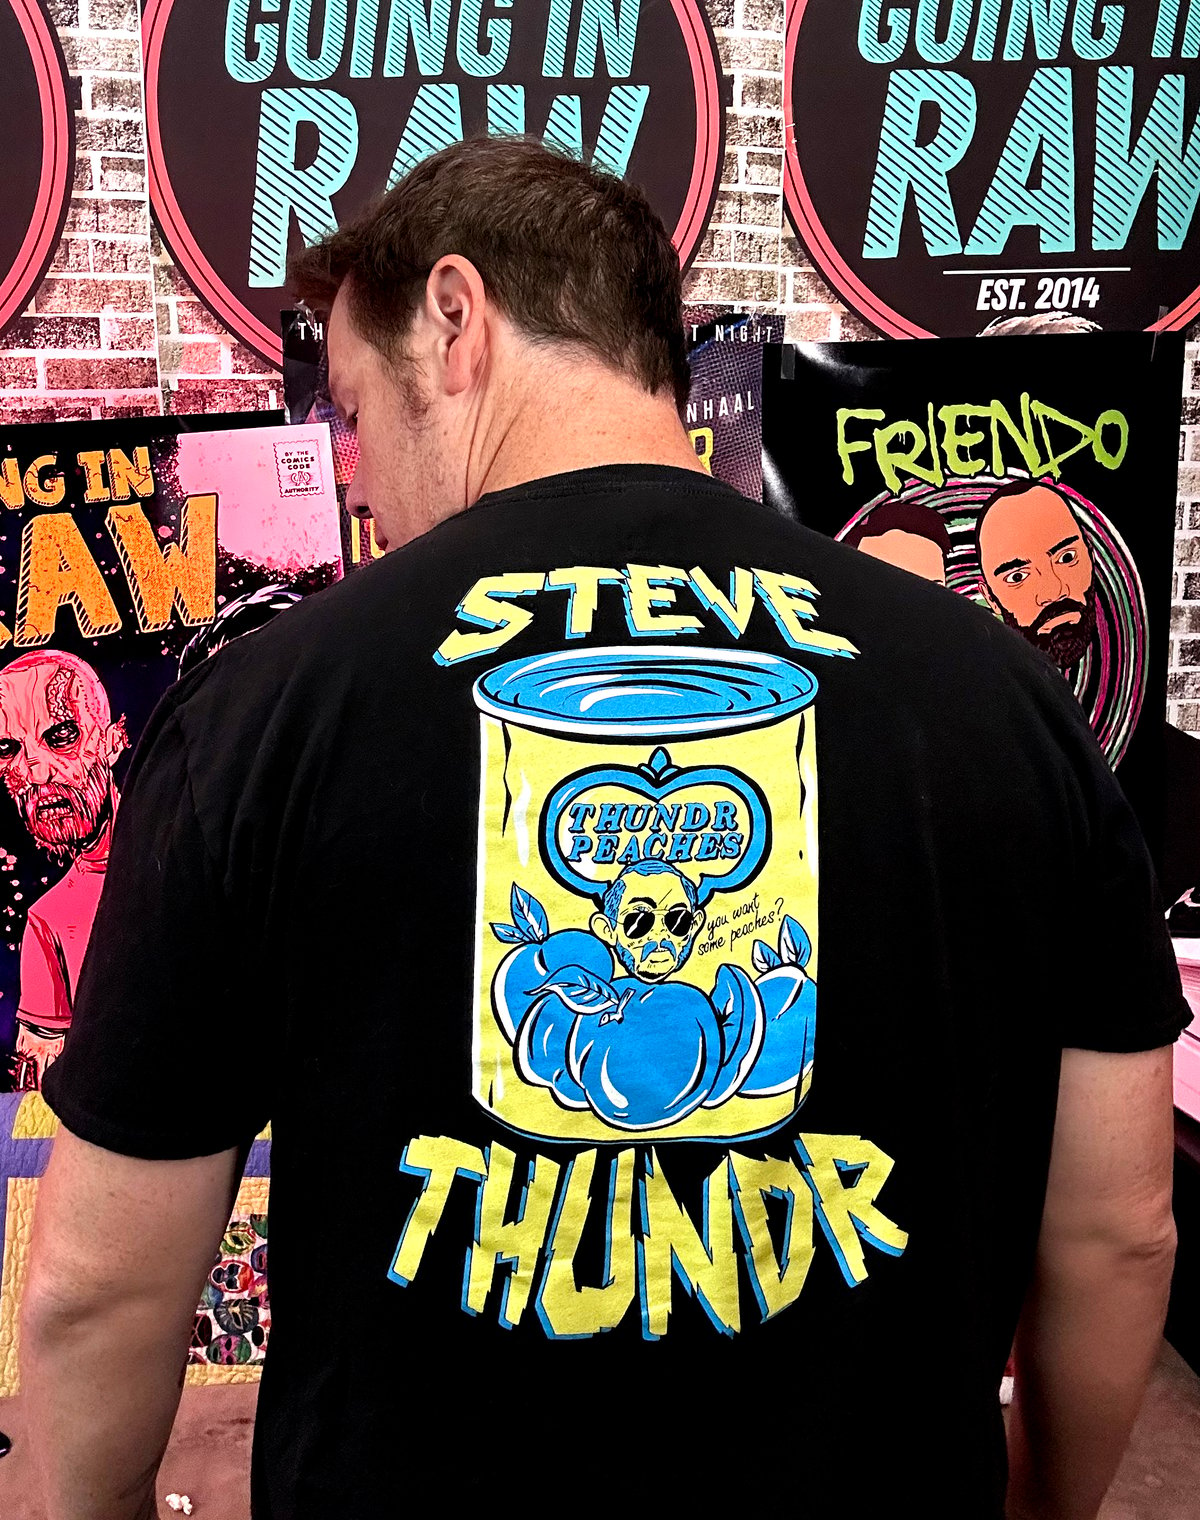 Image of Steve Thundr Shirt Pack